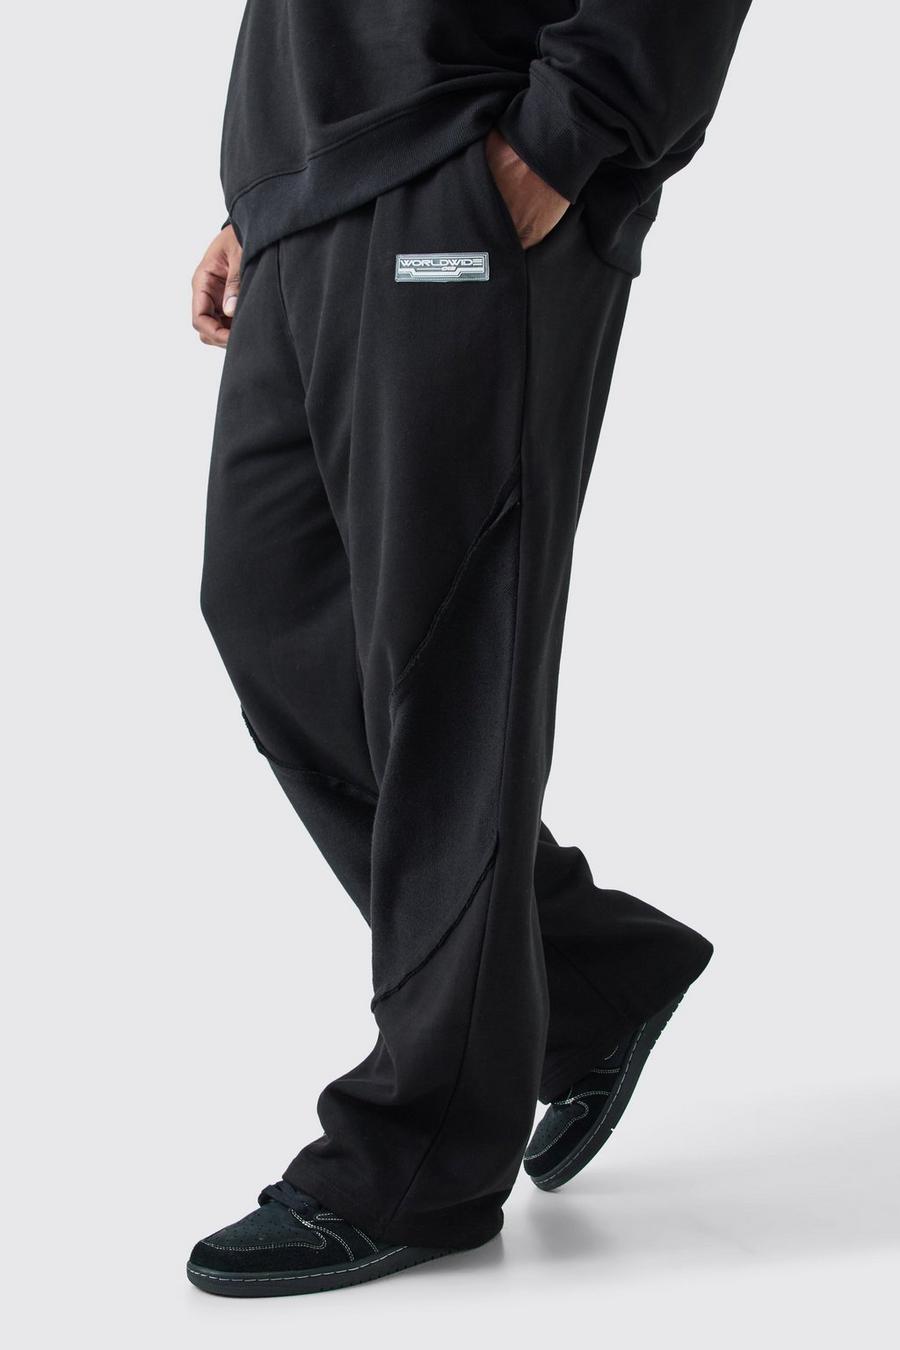 Pantaloni tuta Plus Size rilassati con pannelli arricciati sul retro e fondo grezzo, Black